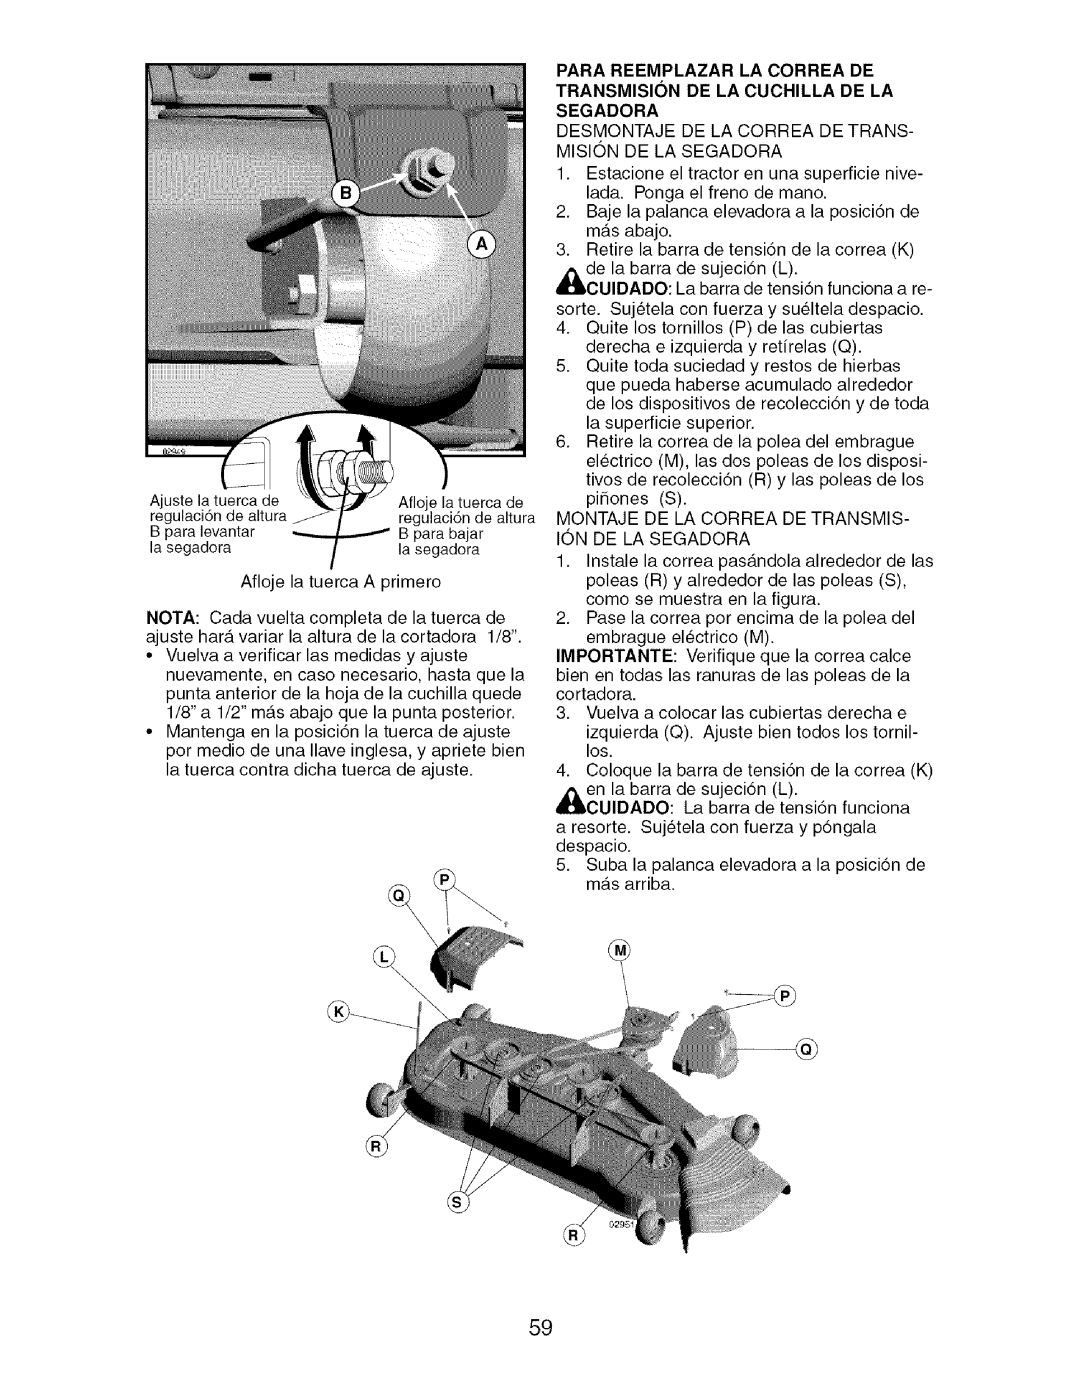 Craftsman 917.276920 manual Desmontaje DE LA Correa DE TRANS- Mision DE LA Segadora 